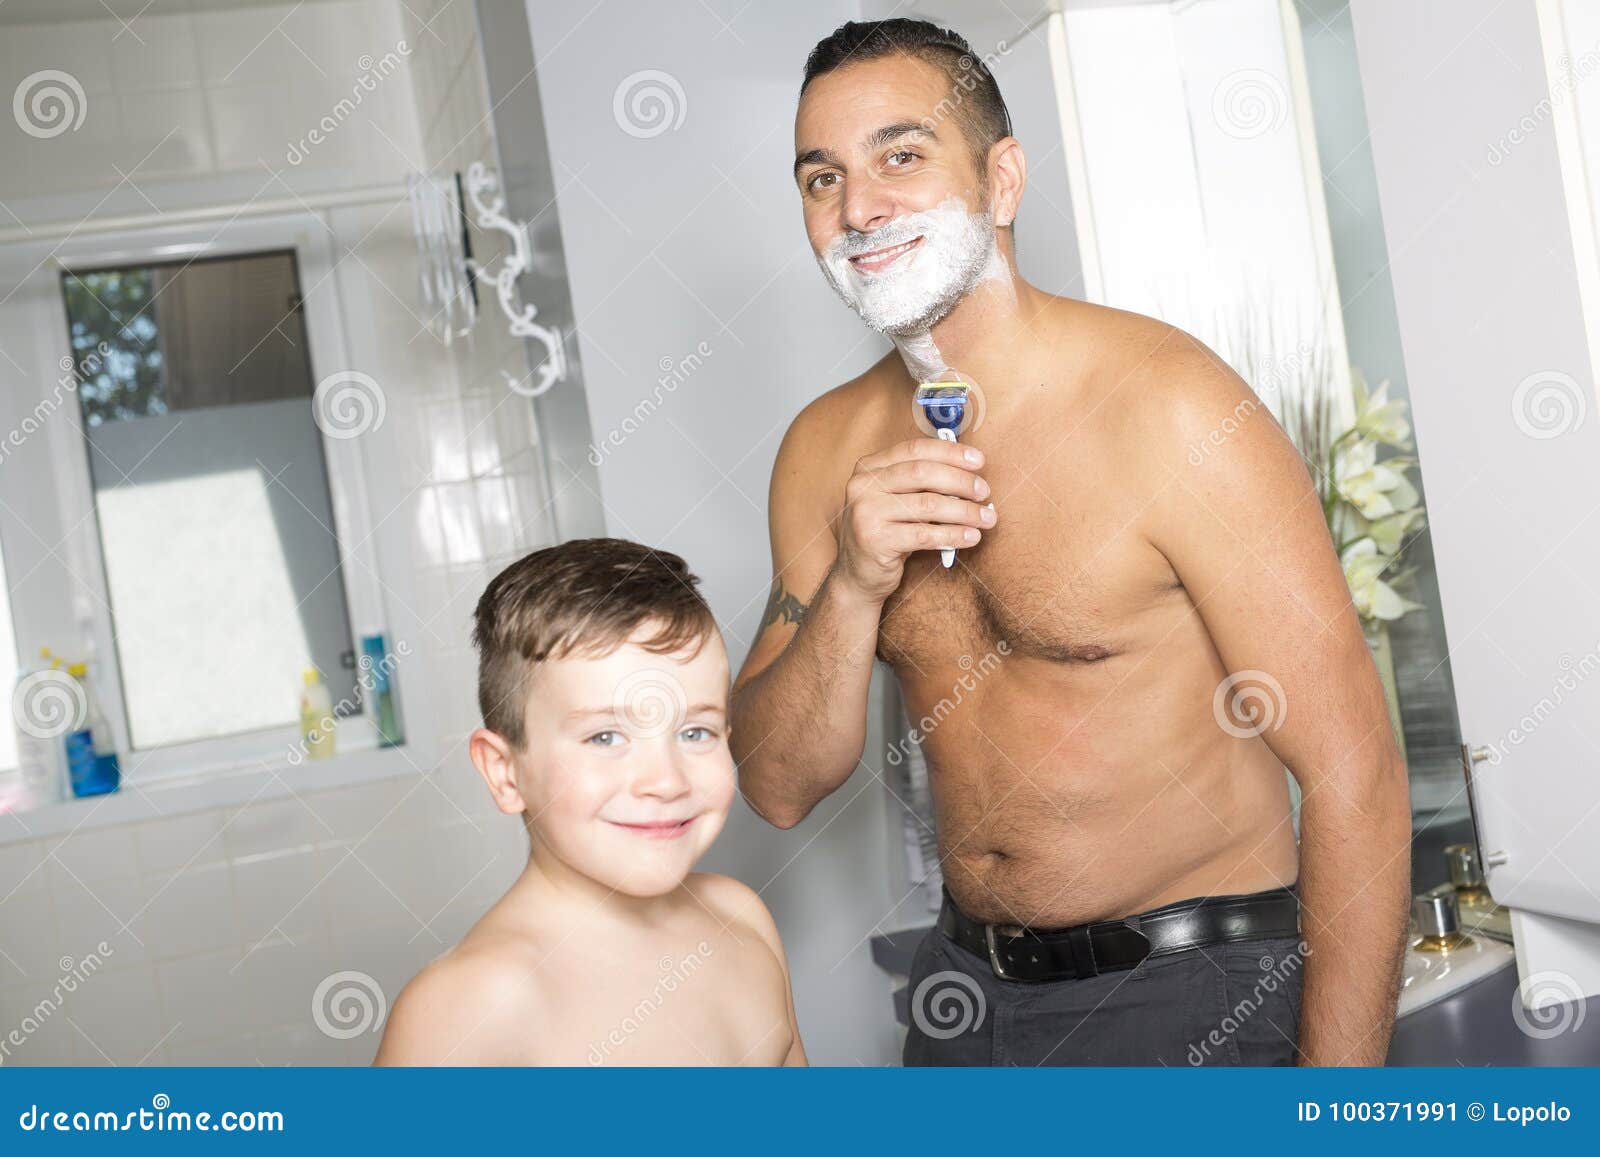 Мама бритая видео. Фотосессия пап в ванне. Малыш с папой в ванне. Папа купается. Сын в ванне.